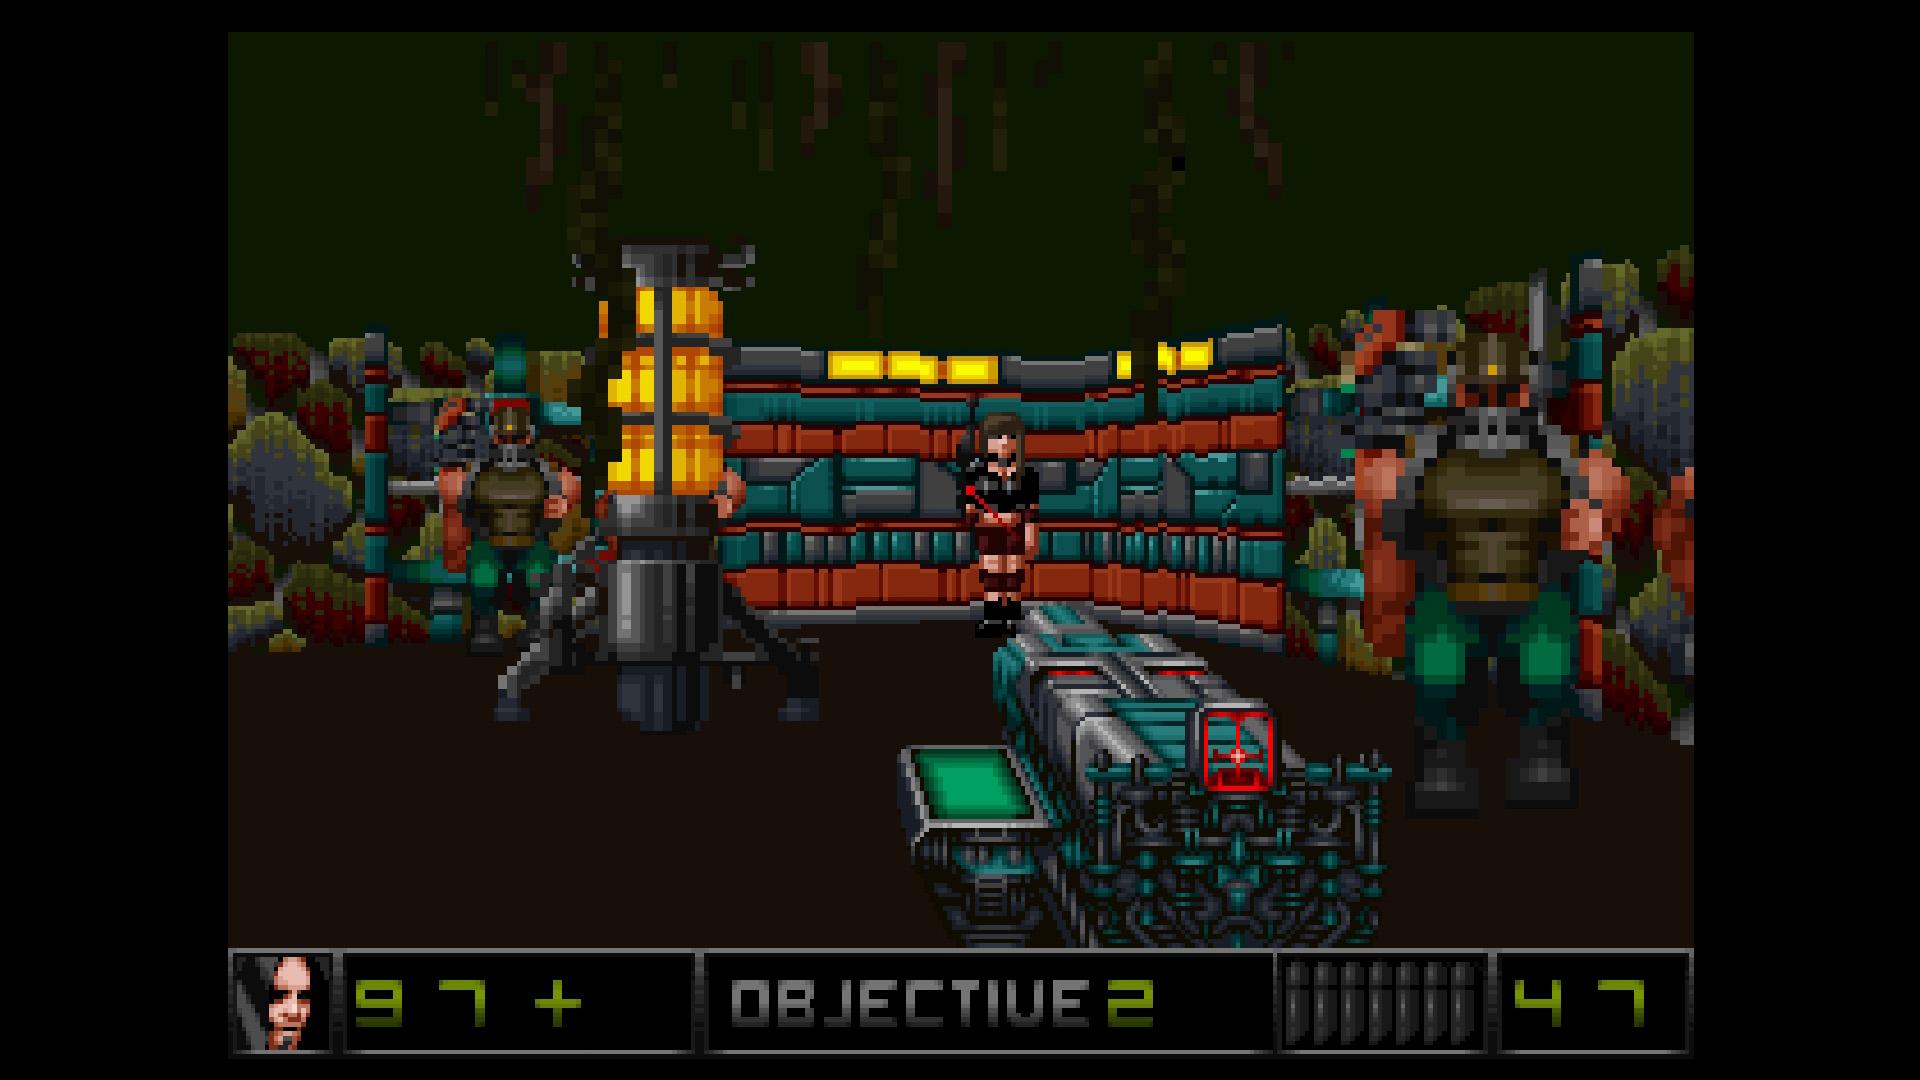 Screenshot №4 from game Merger 3D